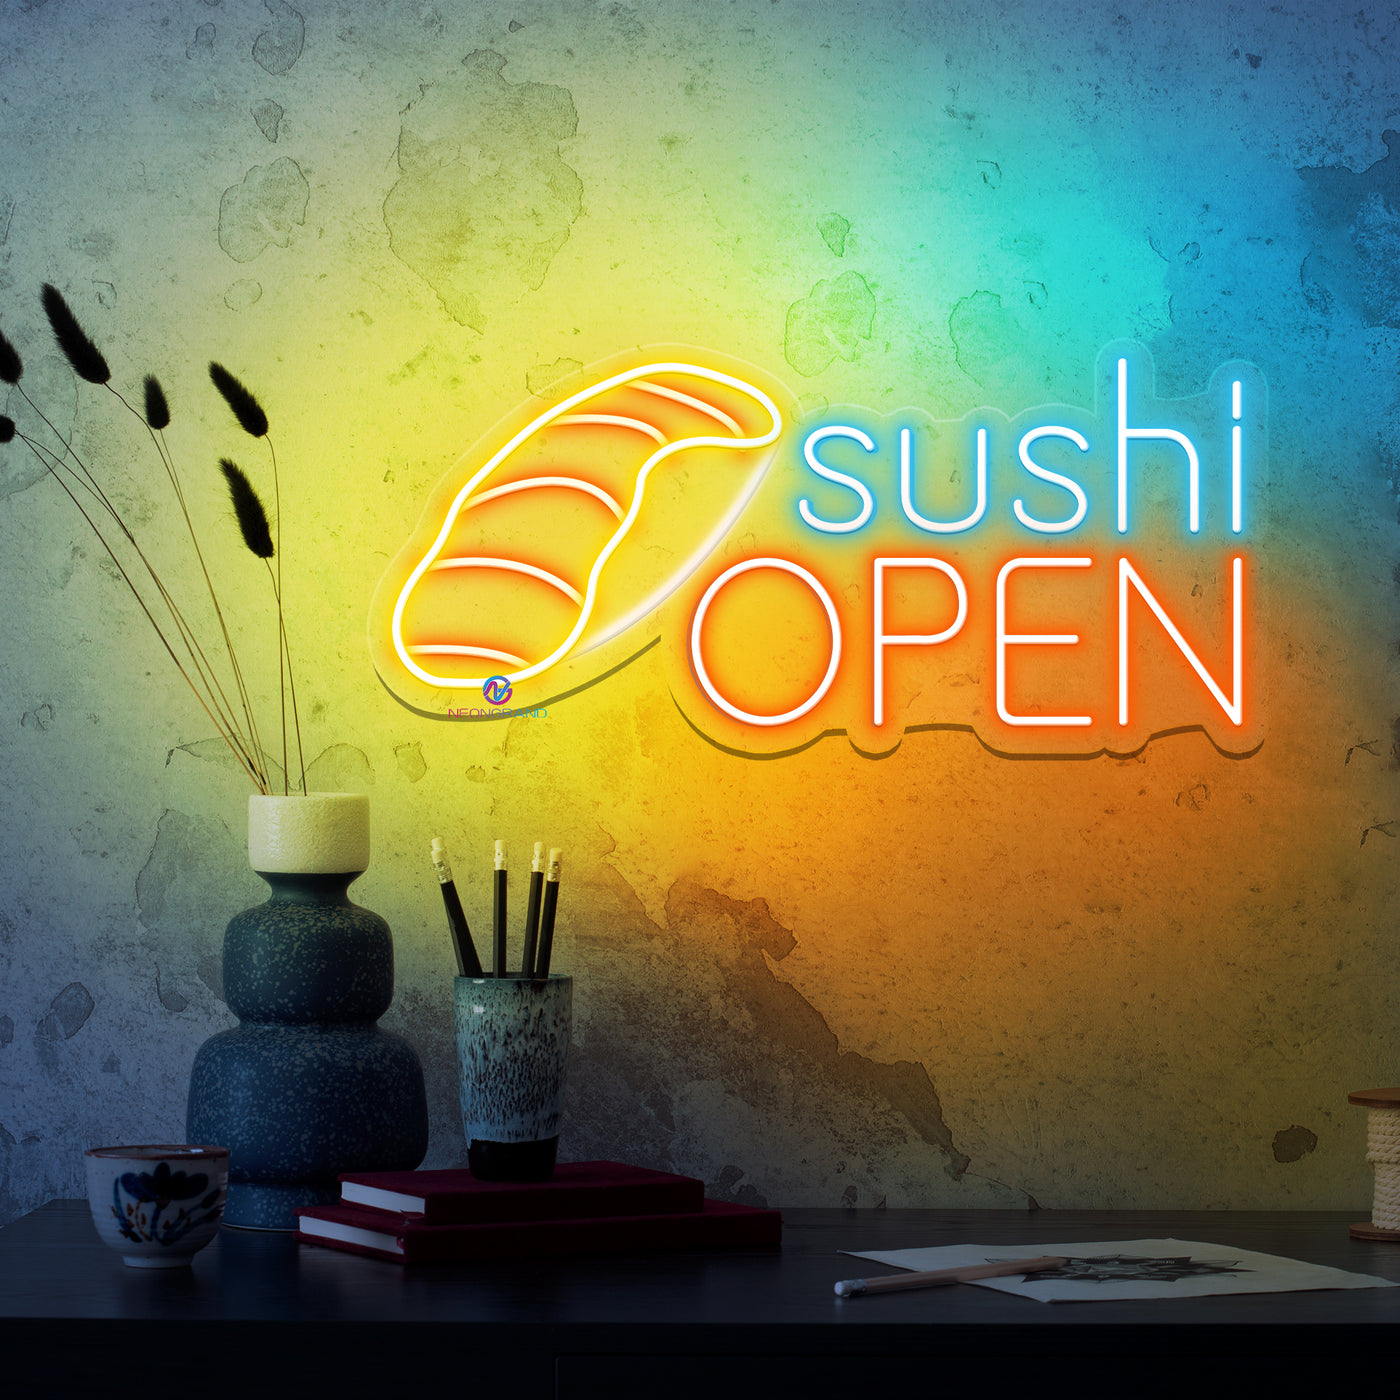 Sushi Open Neon Sign Restaurant Led Light